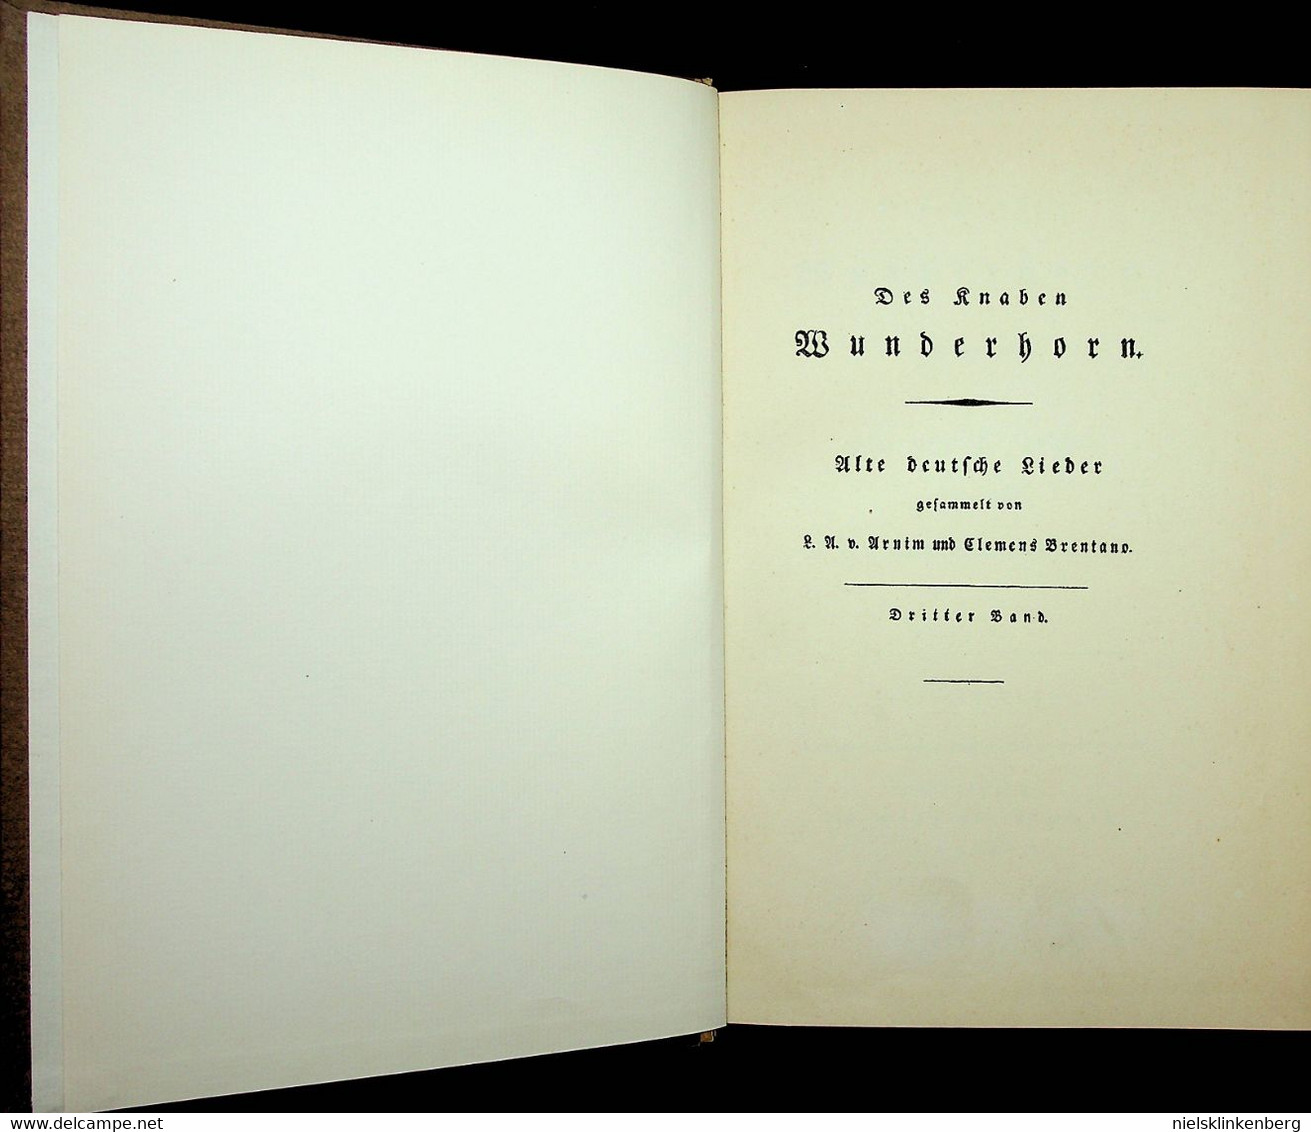 Arnim, Ludwig Achim von und Clemens Brentano - Des Knaben Wunderhorn, Alte Deutsche Lieder in 3 delen. - 1928